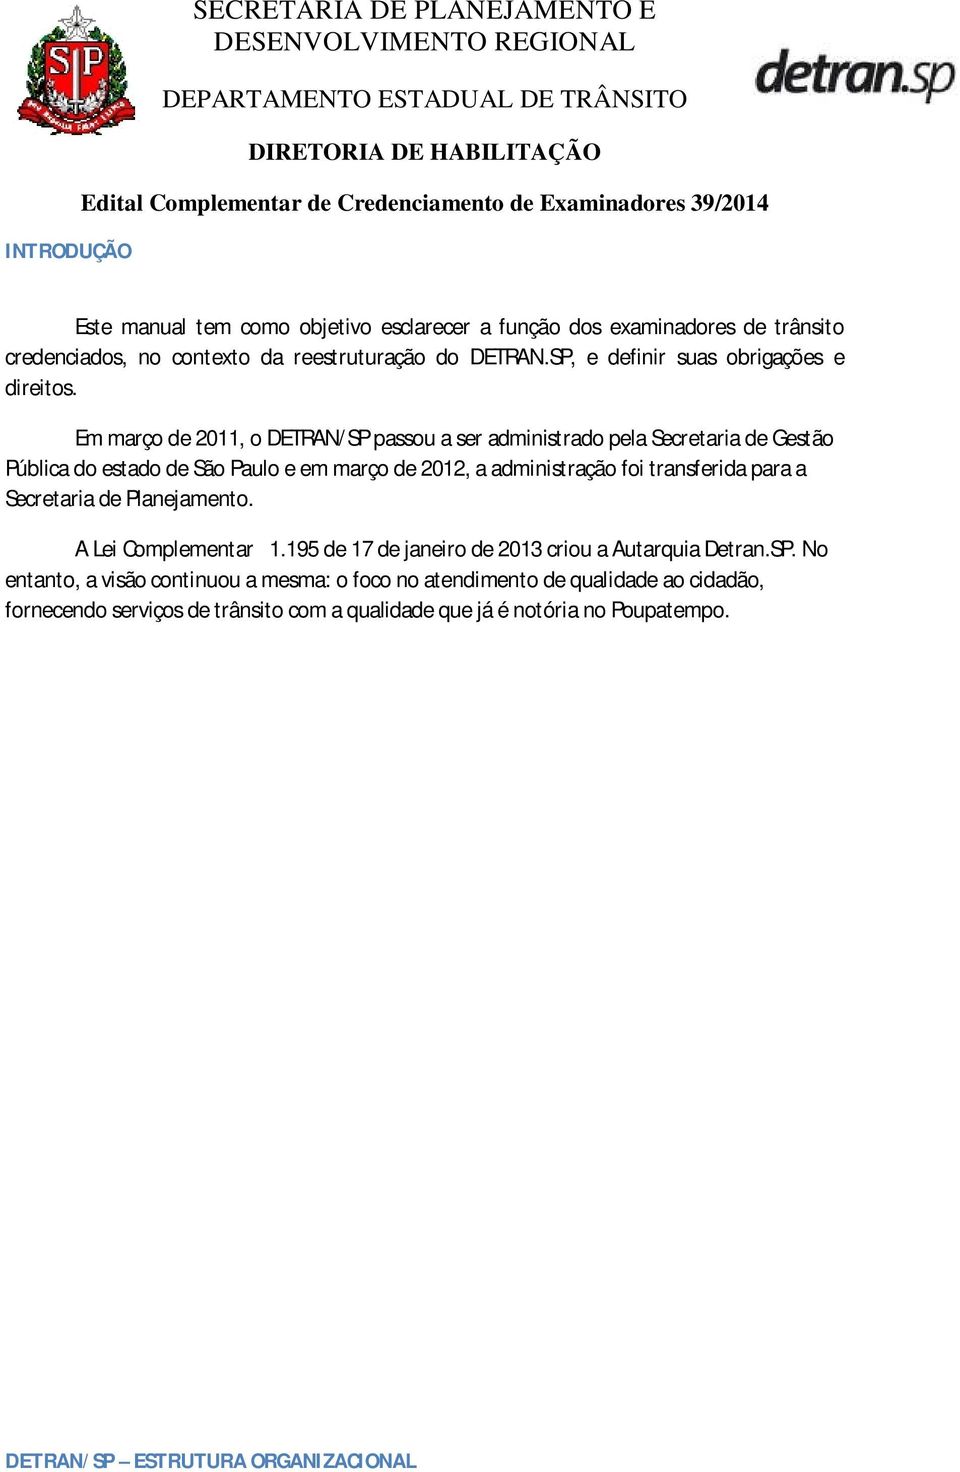 Em março de 2011, o DETRAN/SP passou a ser administrado pela Secretaria de Gestão Pública do estado de São Paulo e em março de 2012, a administração foi transferida para a